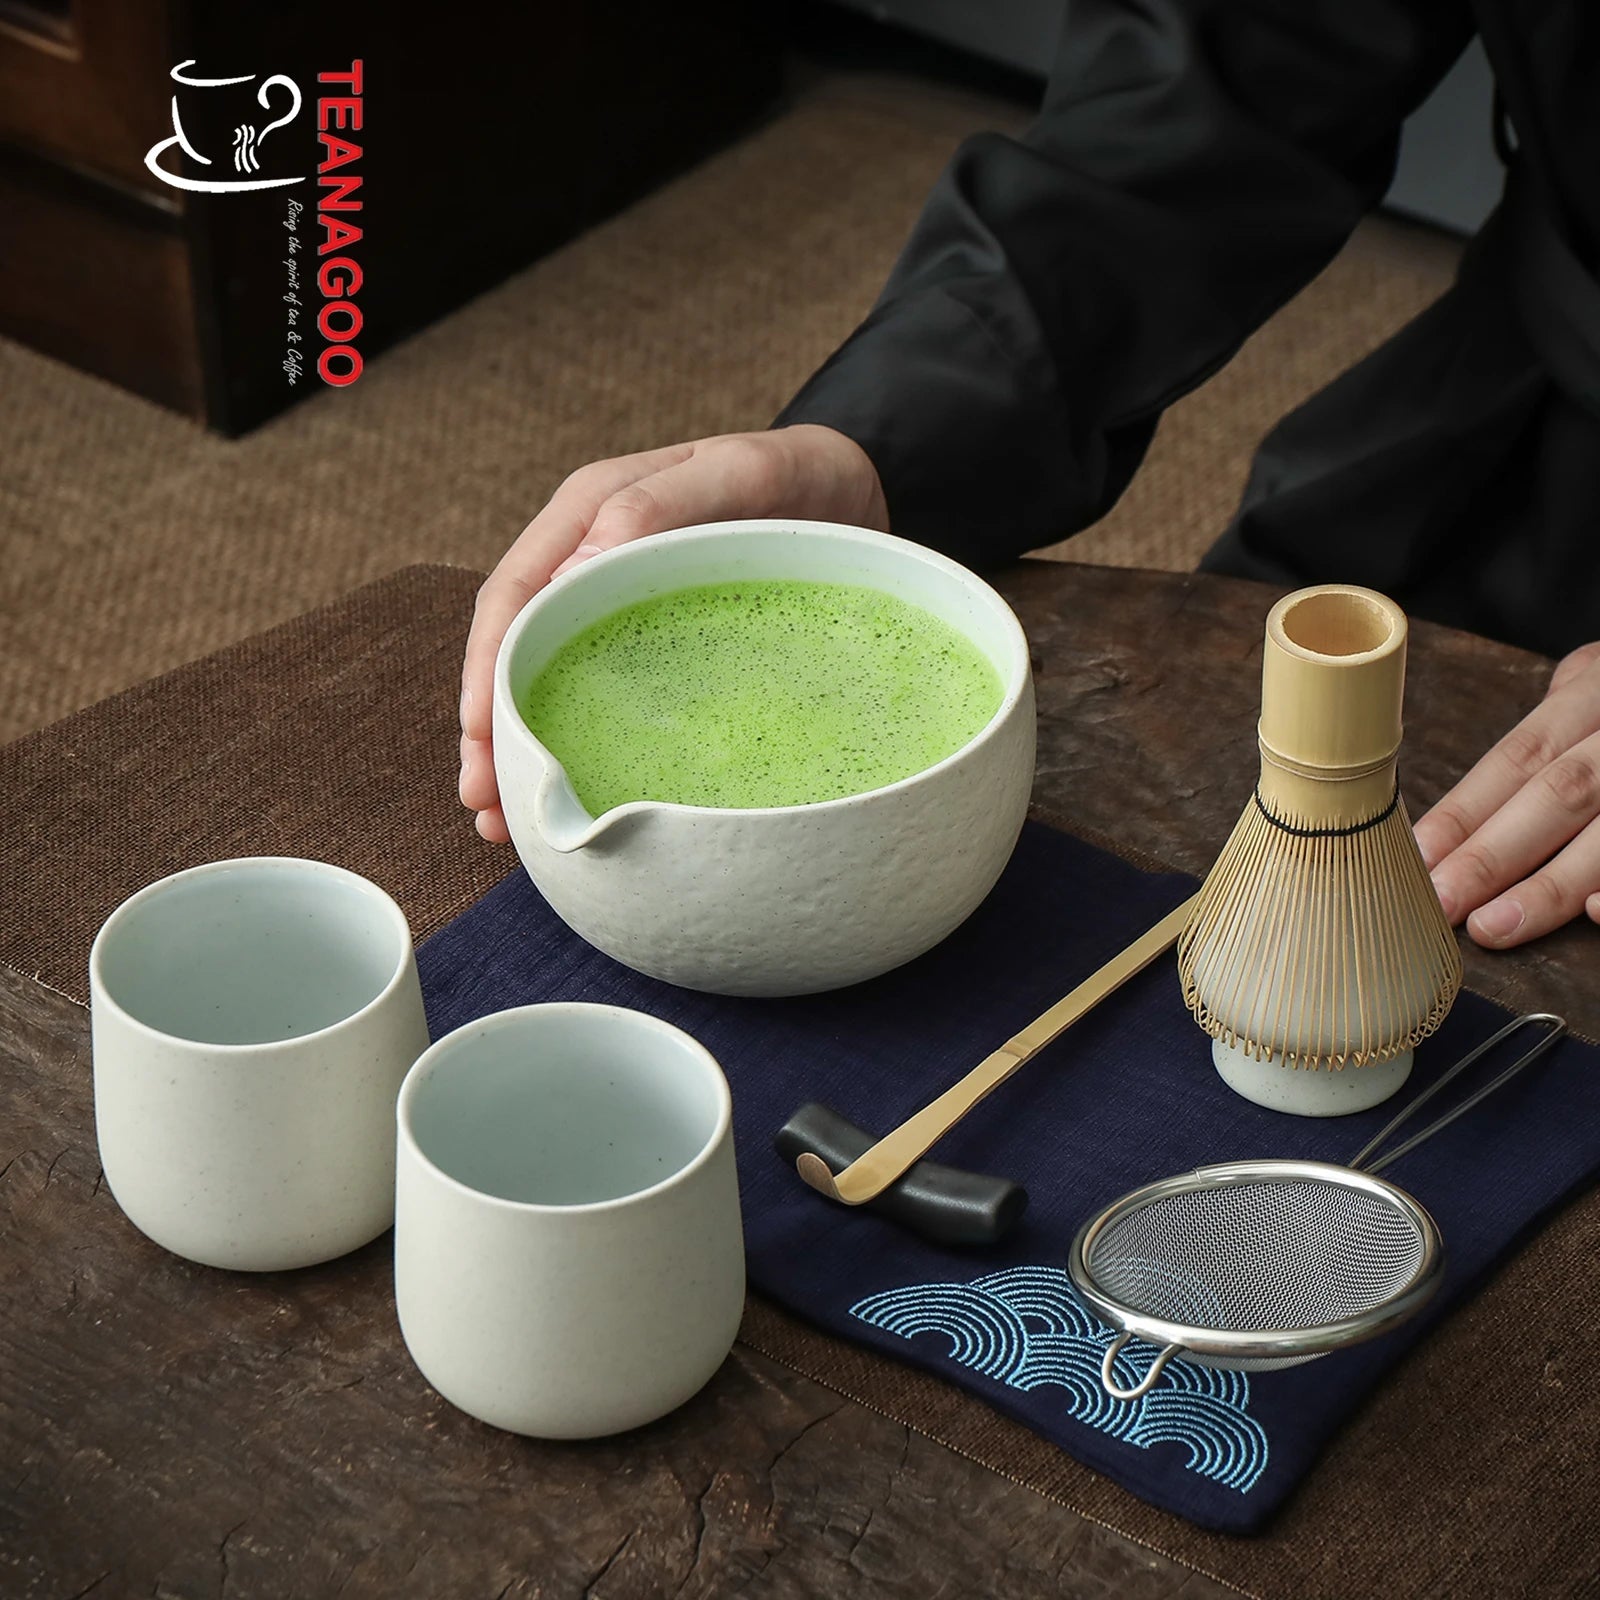  TEANAGOO Juego de té matcha, juego de té japonés